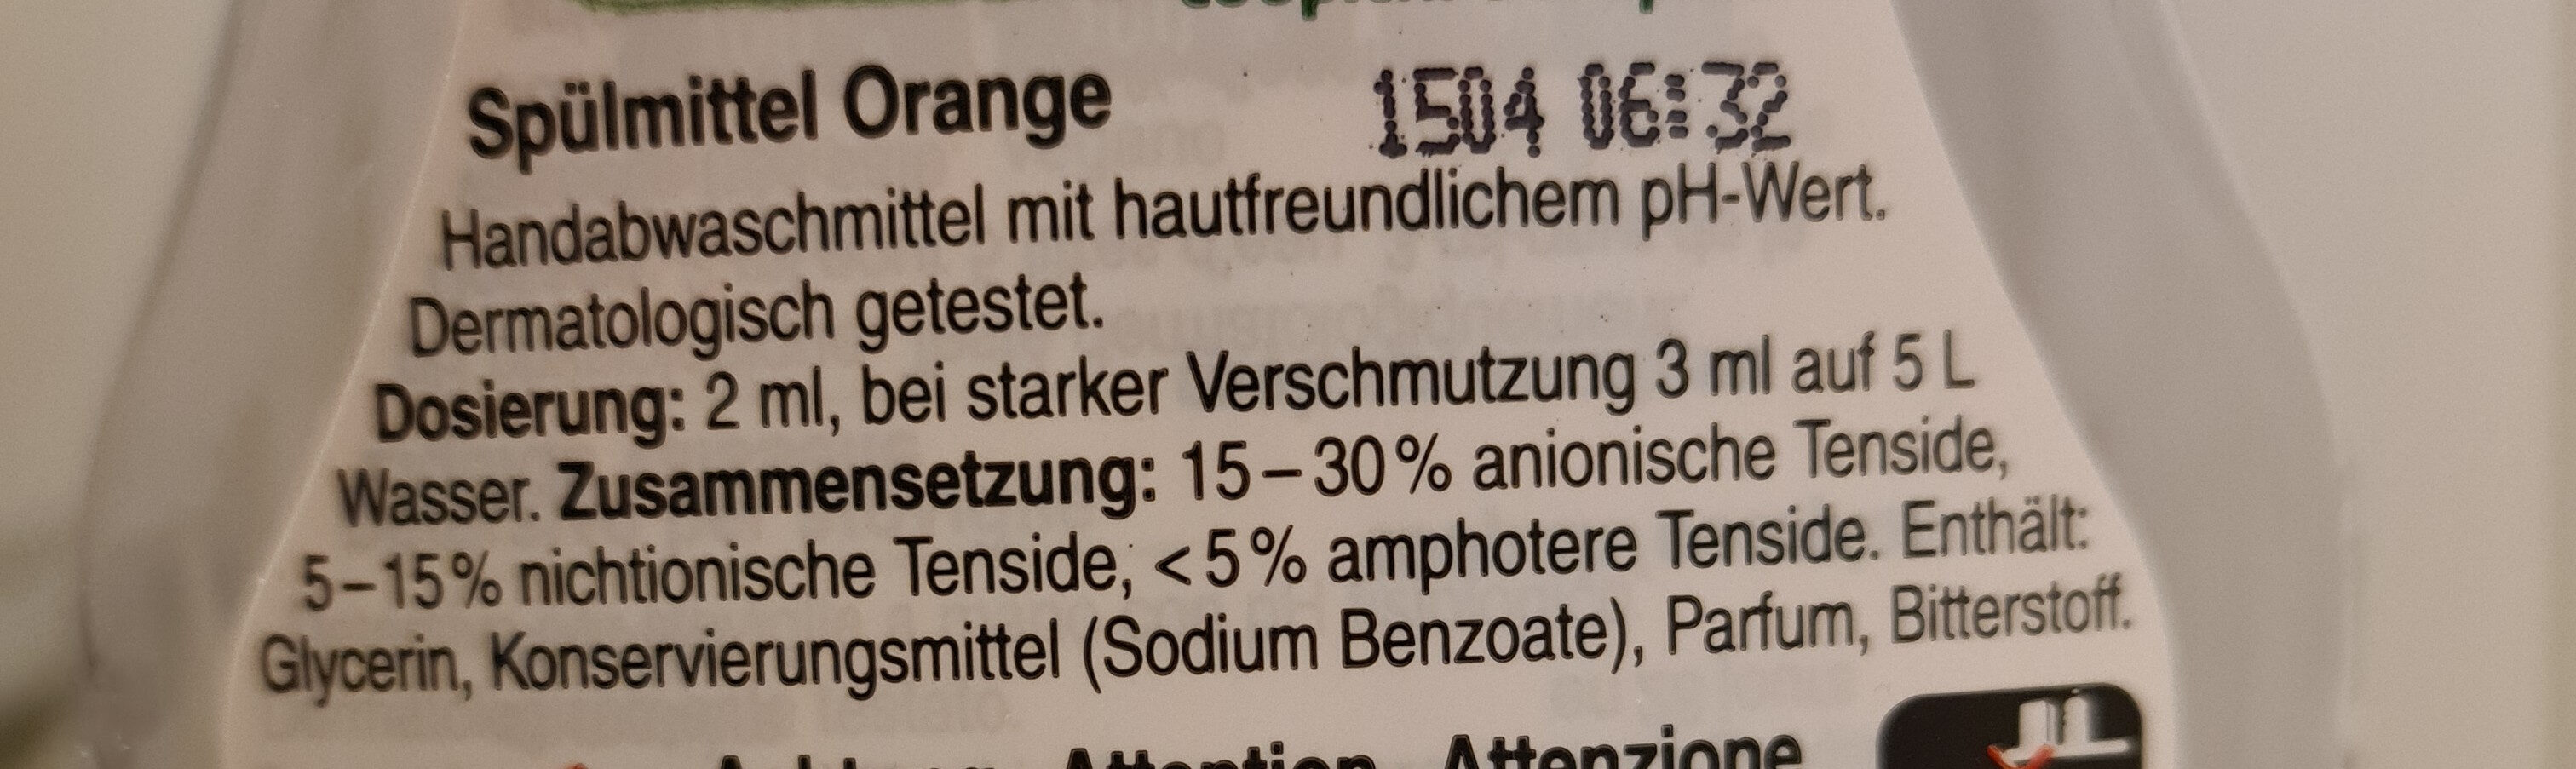 Oecoplan Abwaschmittel Liquide Vaisselle Detersivo per stoviglie Orange - Zutaten - fr